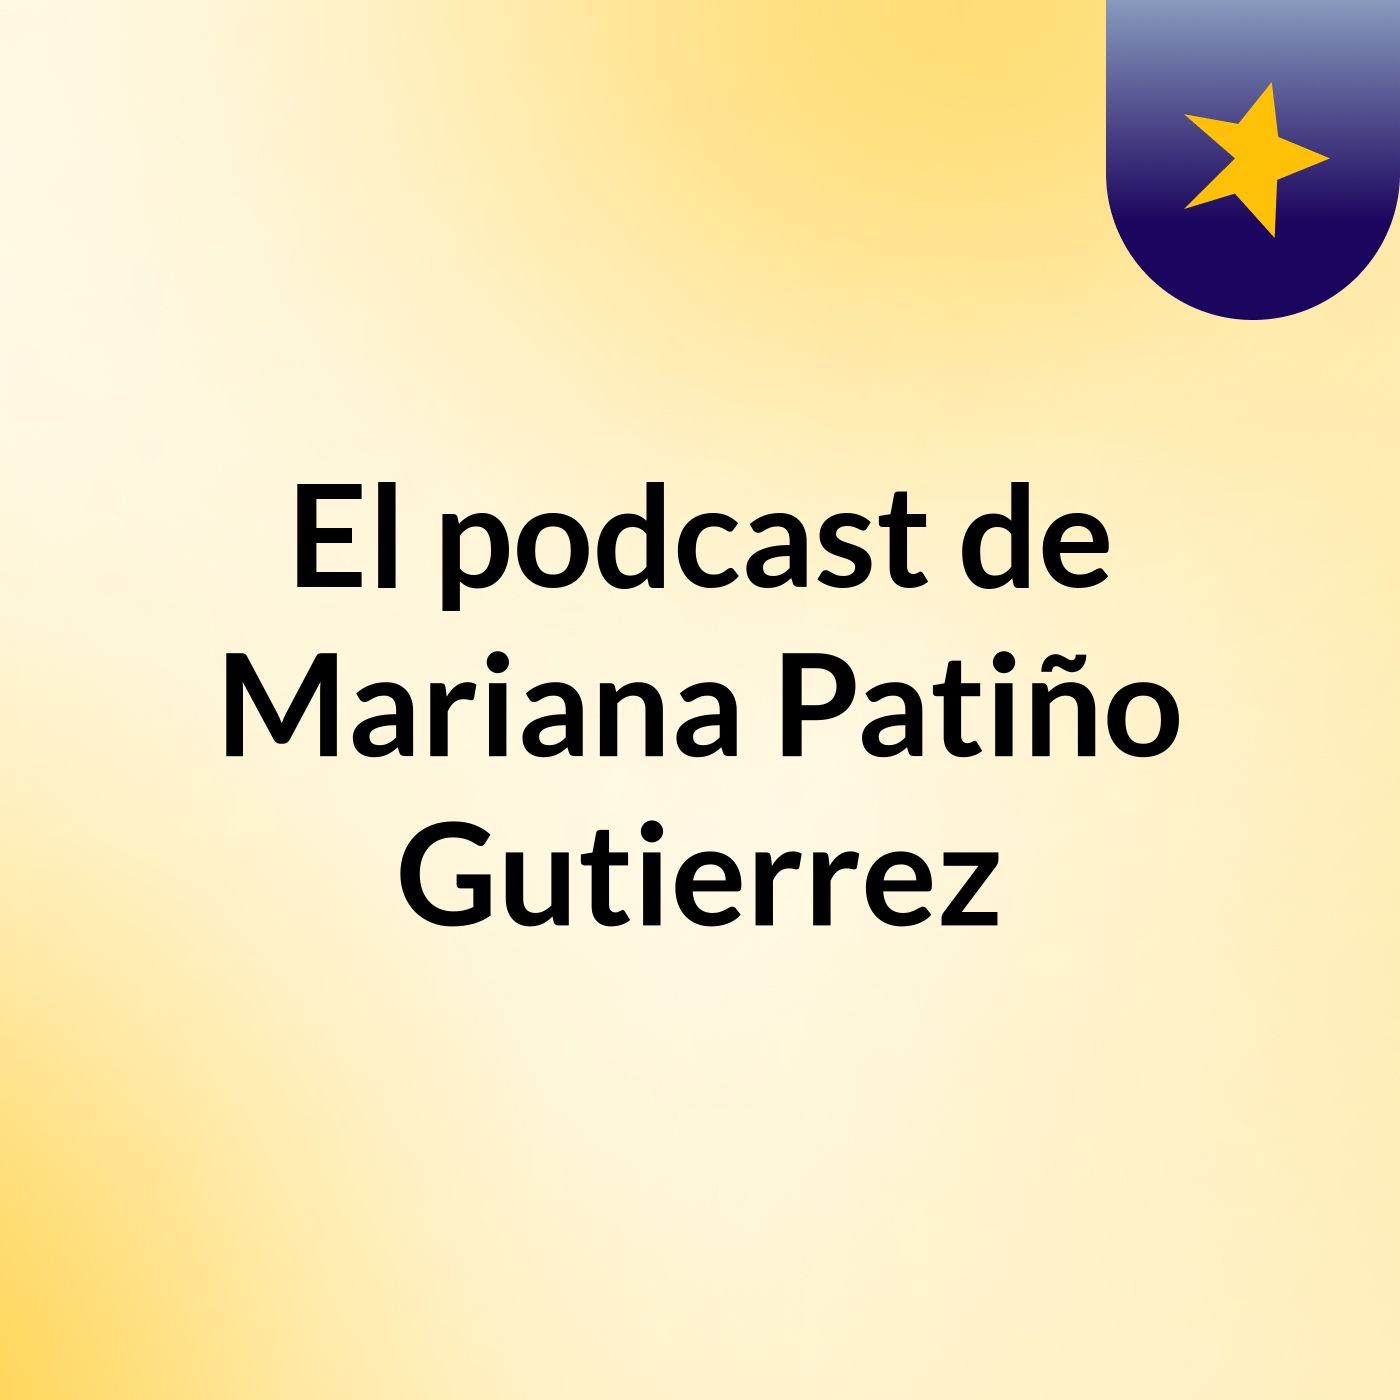 Episodio 2 - El podcast de Mariana Patiño Gutierrez